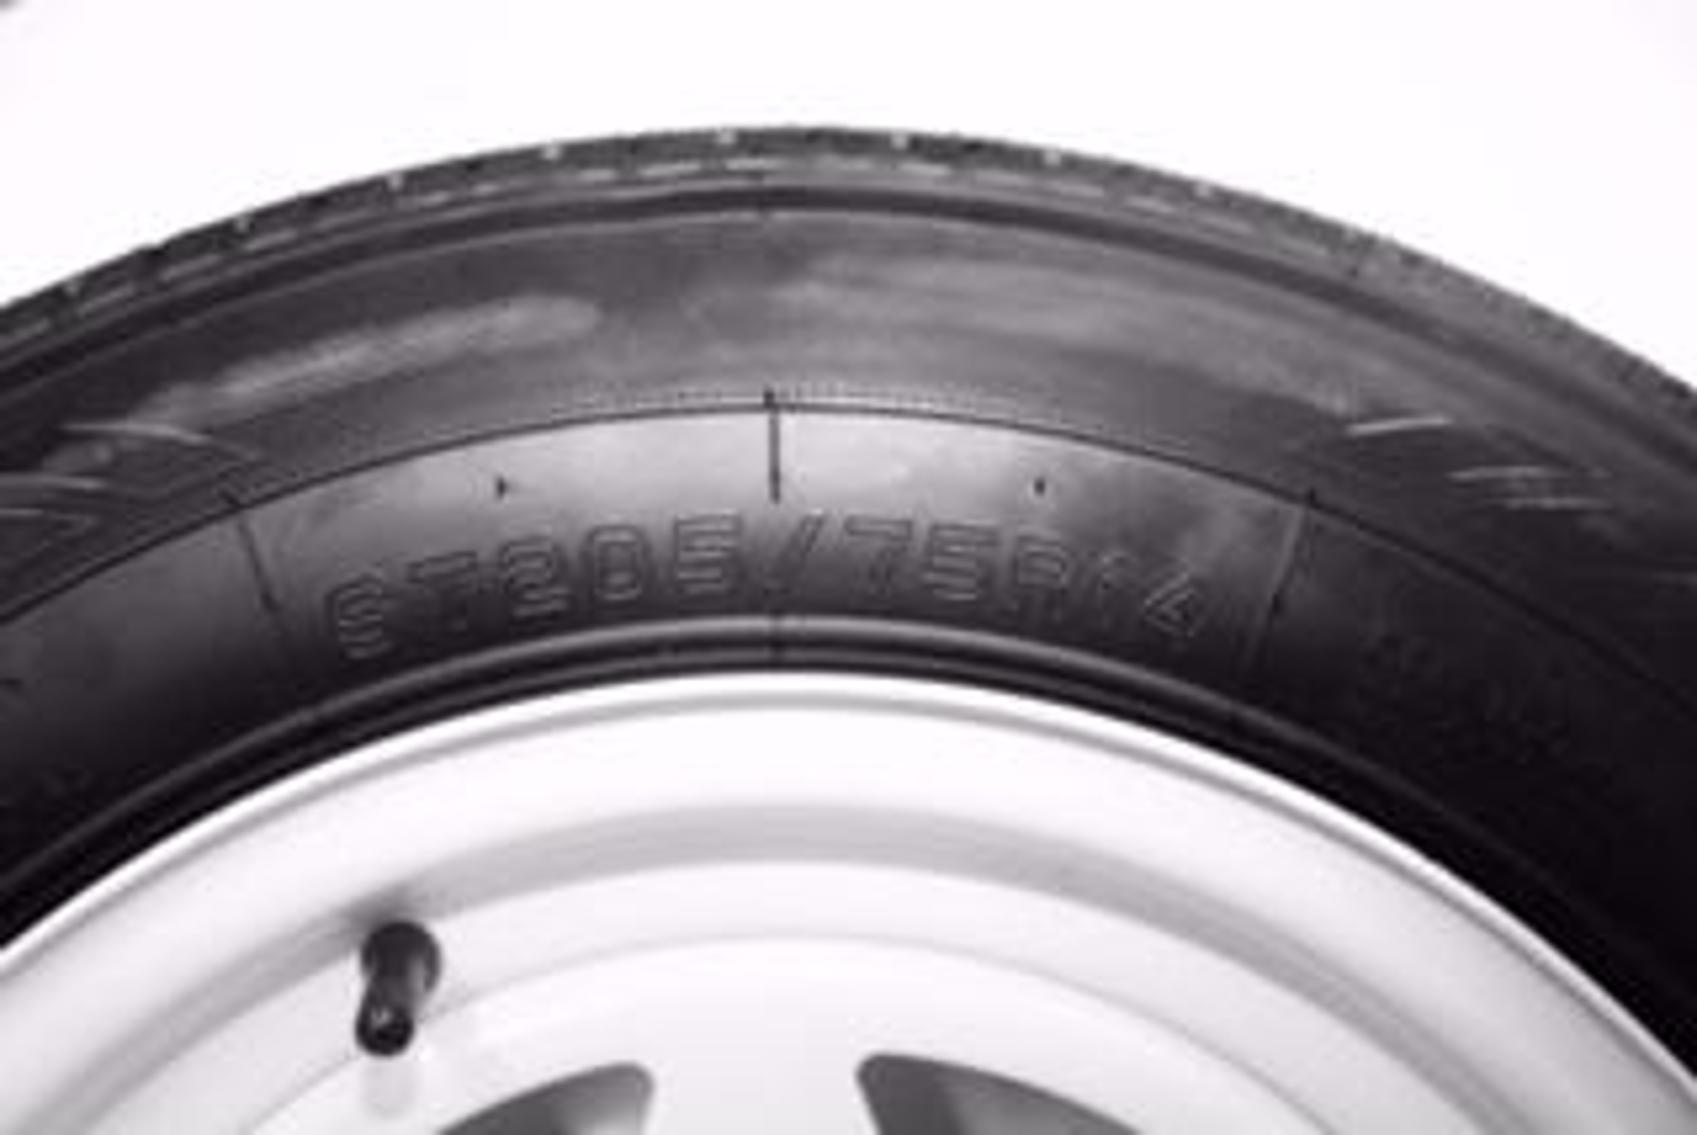 Utility Tires and Rims Liquidation